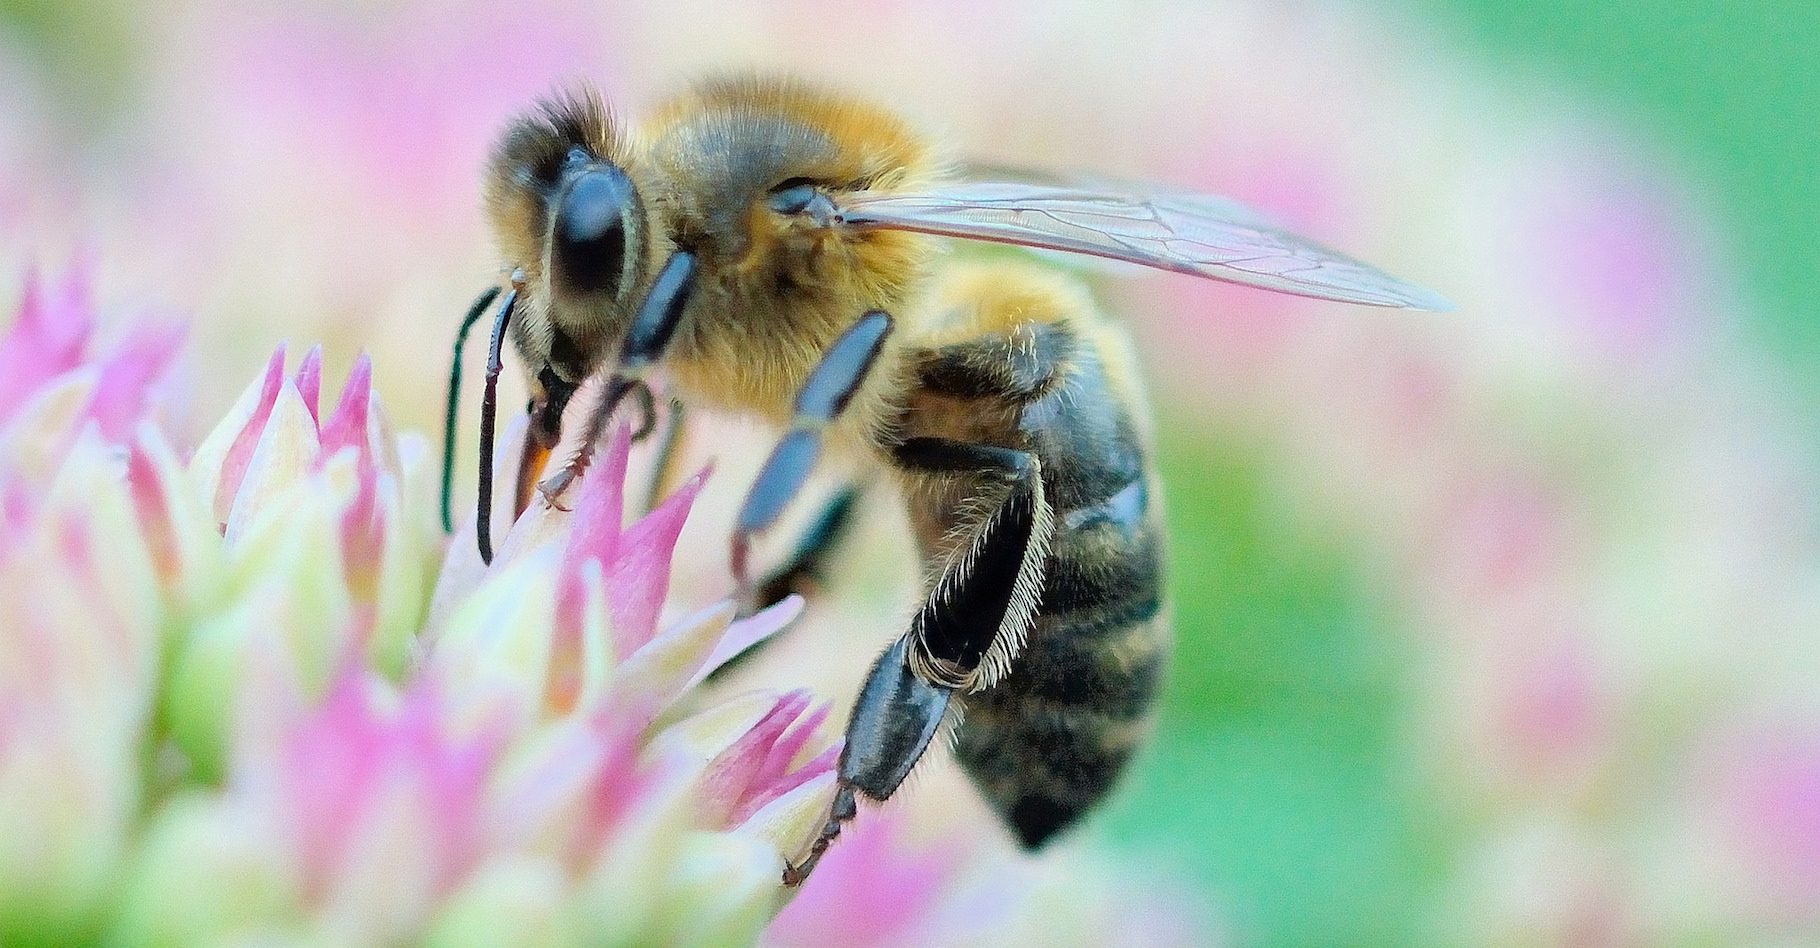 Lorsqu’elle pique un être humain, l’abeille se condamne sans le savoir à une mort certaine. © Bernard Ruelle, Flickr, CC by-nc-nd 2.0